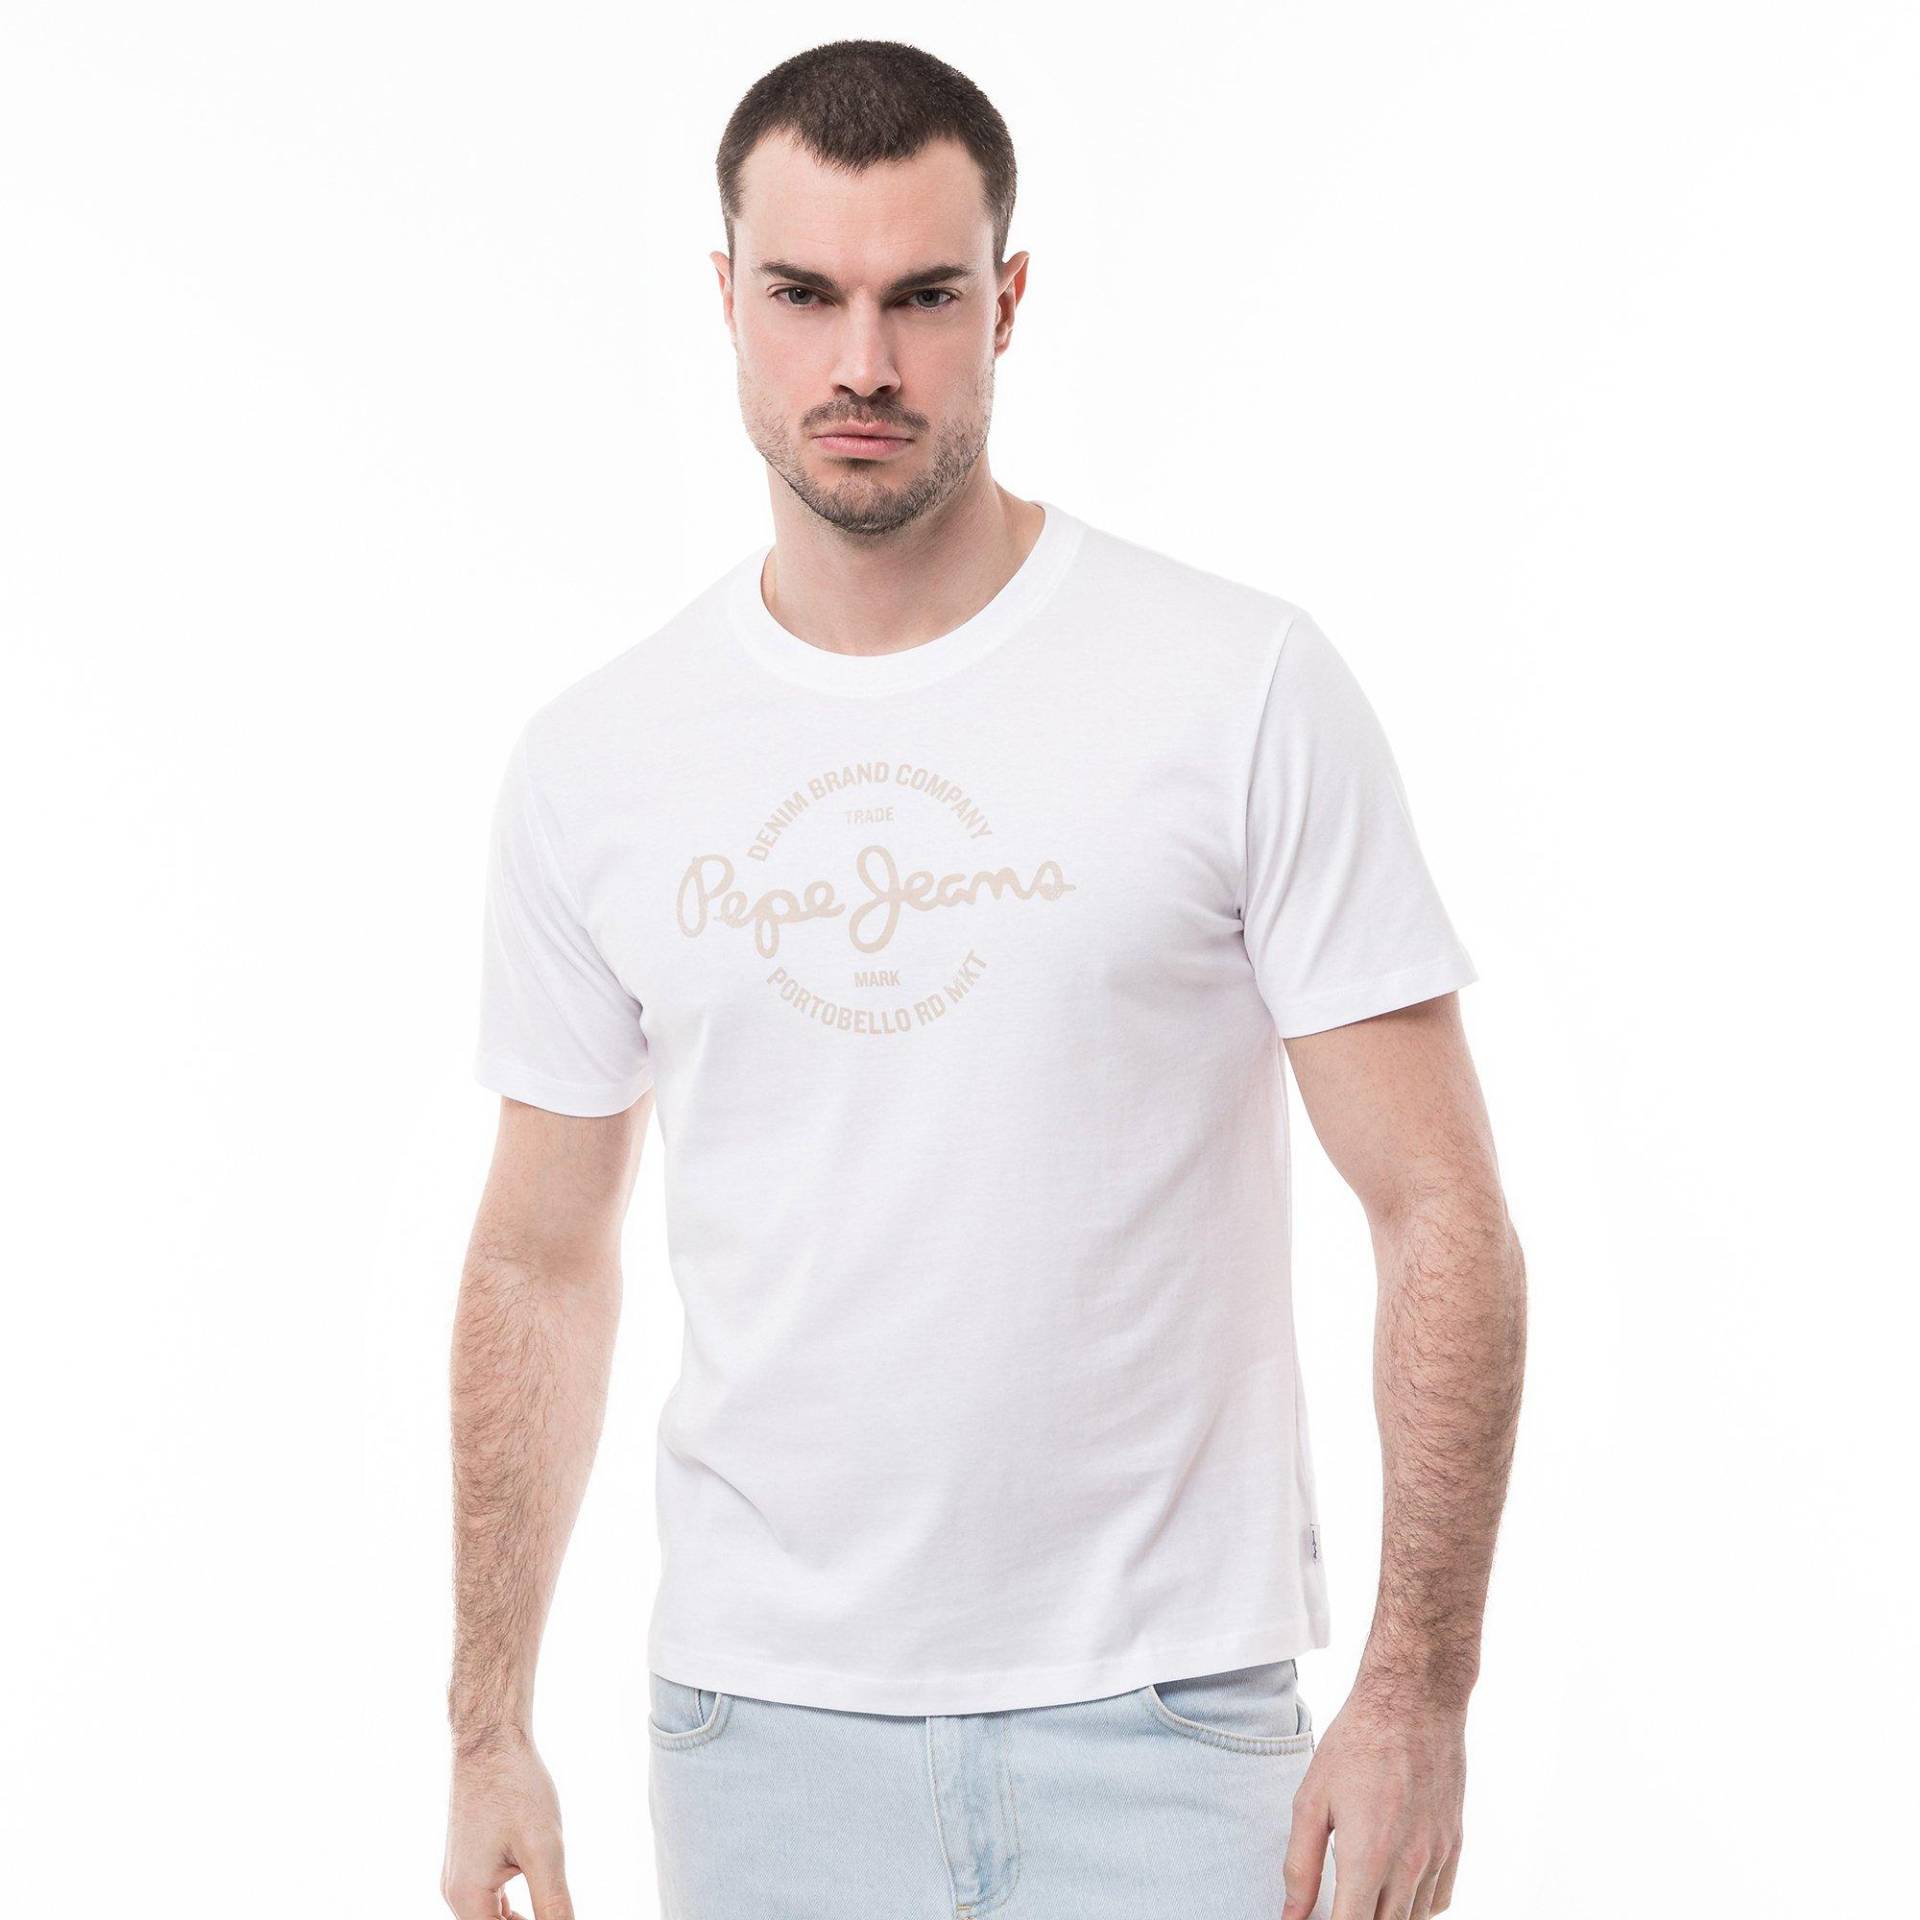 T-shirt Herren Weiss S von Pepe Jeans